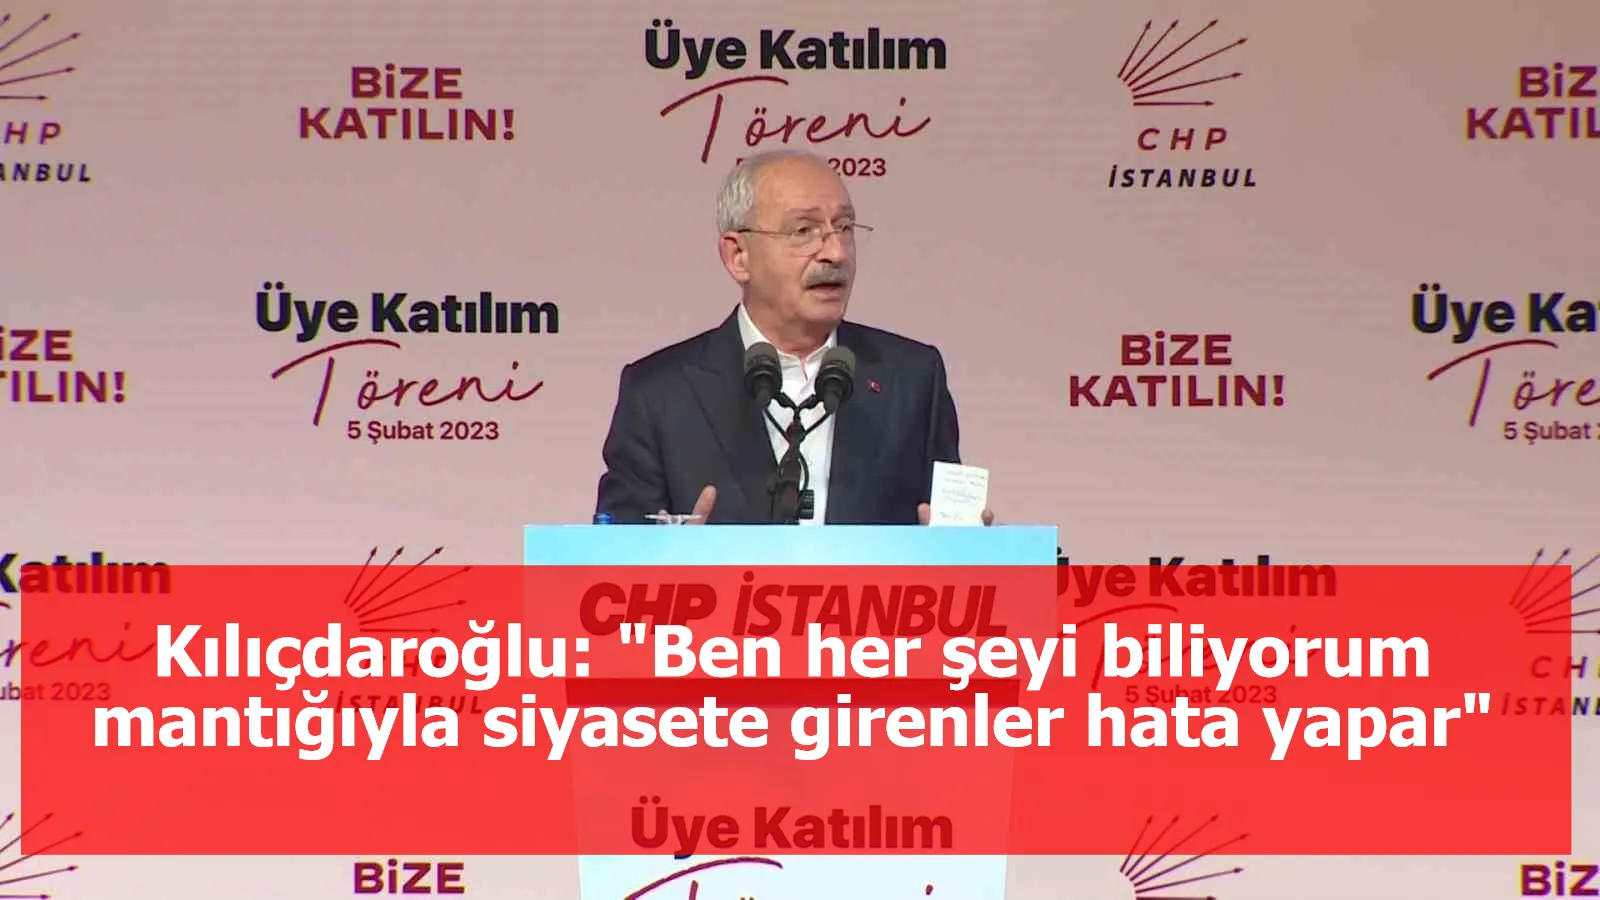 Kılıçdaroğlu: "Ben her şeyi biliyorum mantığıyla siyasete girenler hata yapar"